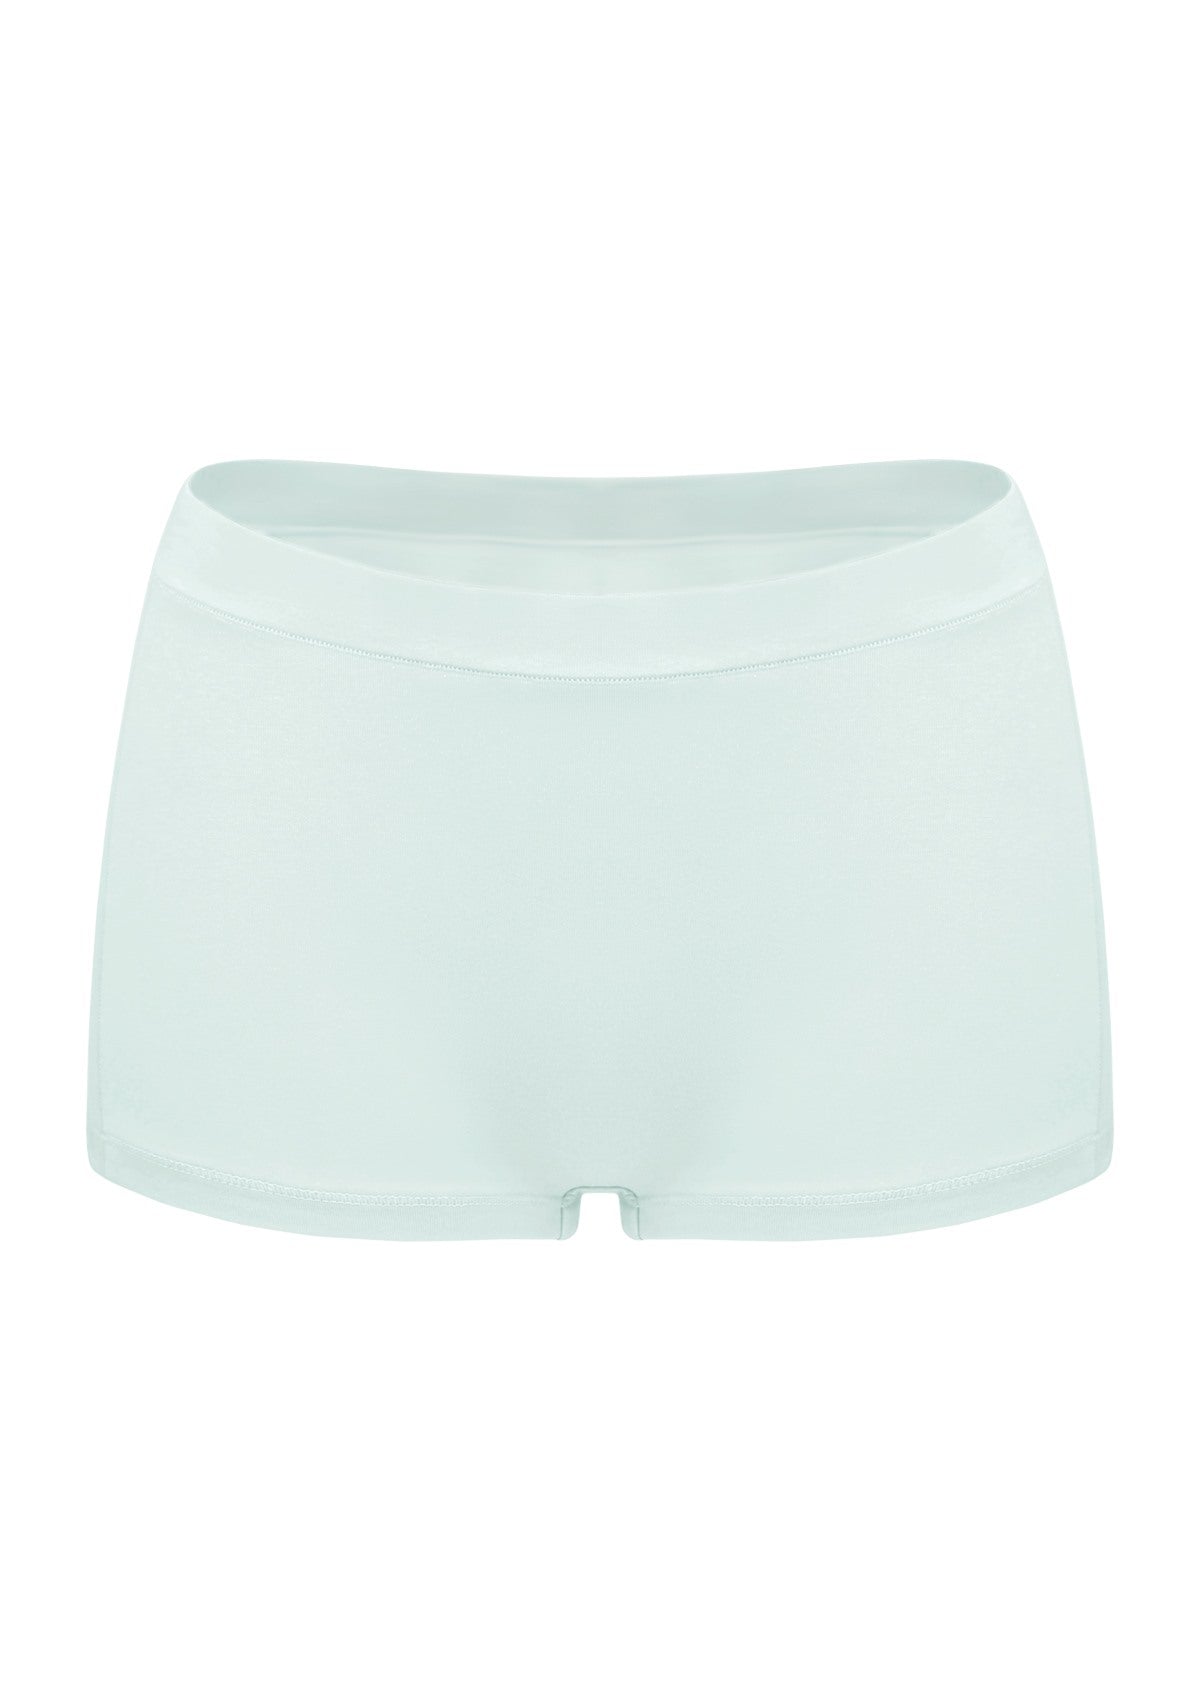 All-Day Comfort Mid-Rise Cotton Boyshorts Underwear 3 Pack - XL / Black+White+Beige